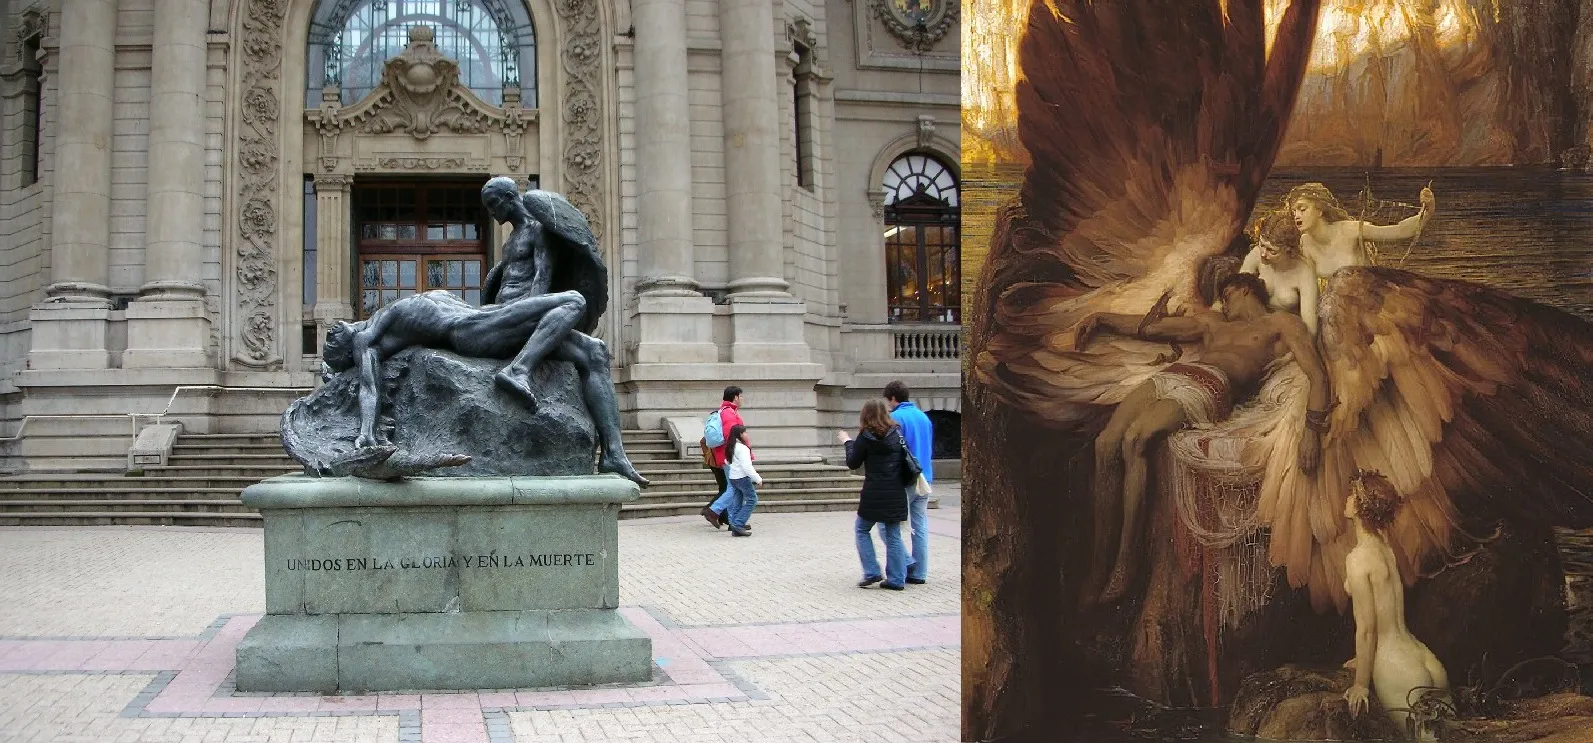 Ο Δαίδαλος θρηνεί τον Ίκαρο: Το σημαντικότερο γλυπτό της Χιλής αναπαριστά τον ελληνικό μύθο (φωτό)